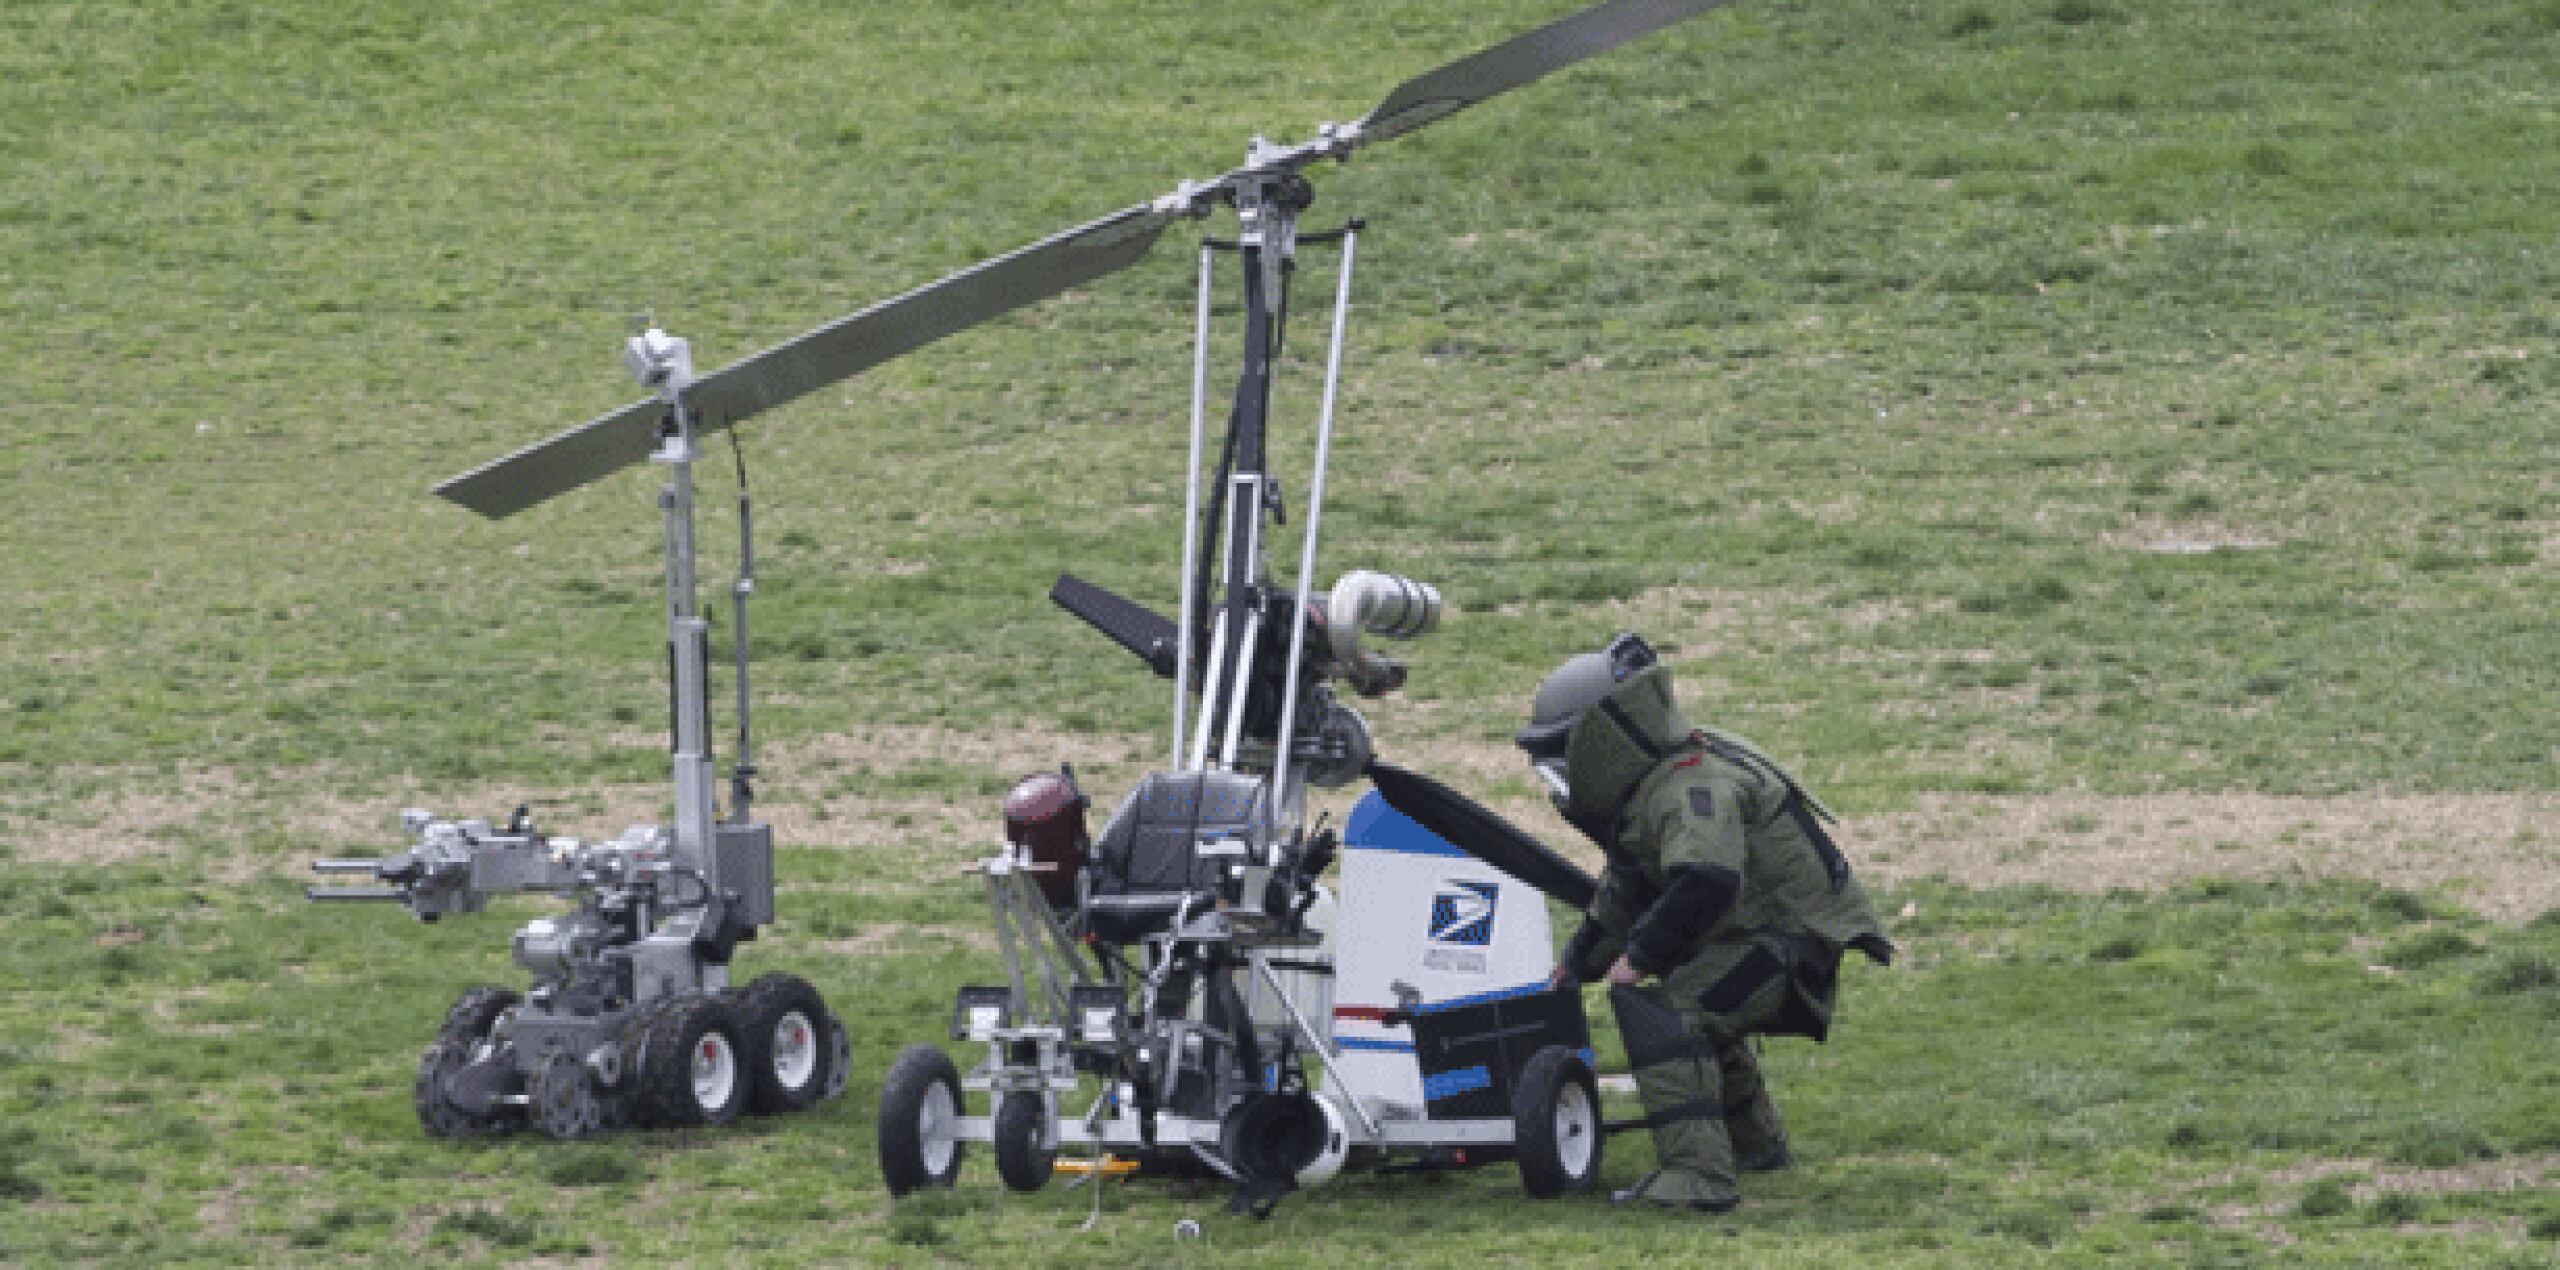 La policía del Capitolio de Estados Unidos se encuentra investigando un helicóptero giroscopio que solo tiene espacio para una persona. (EFE)